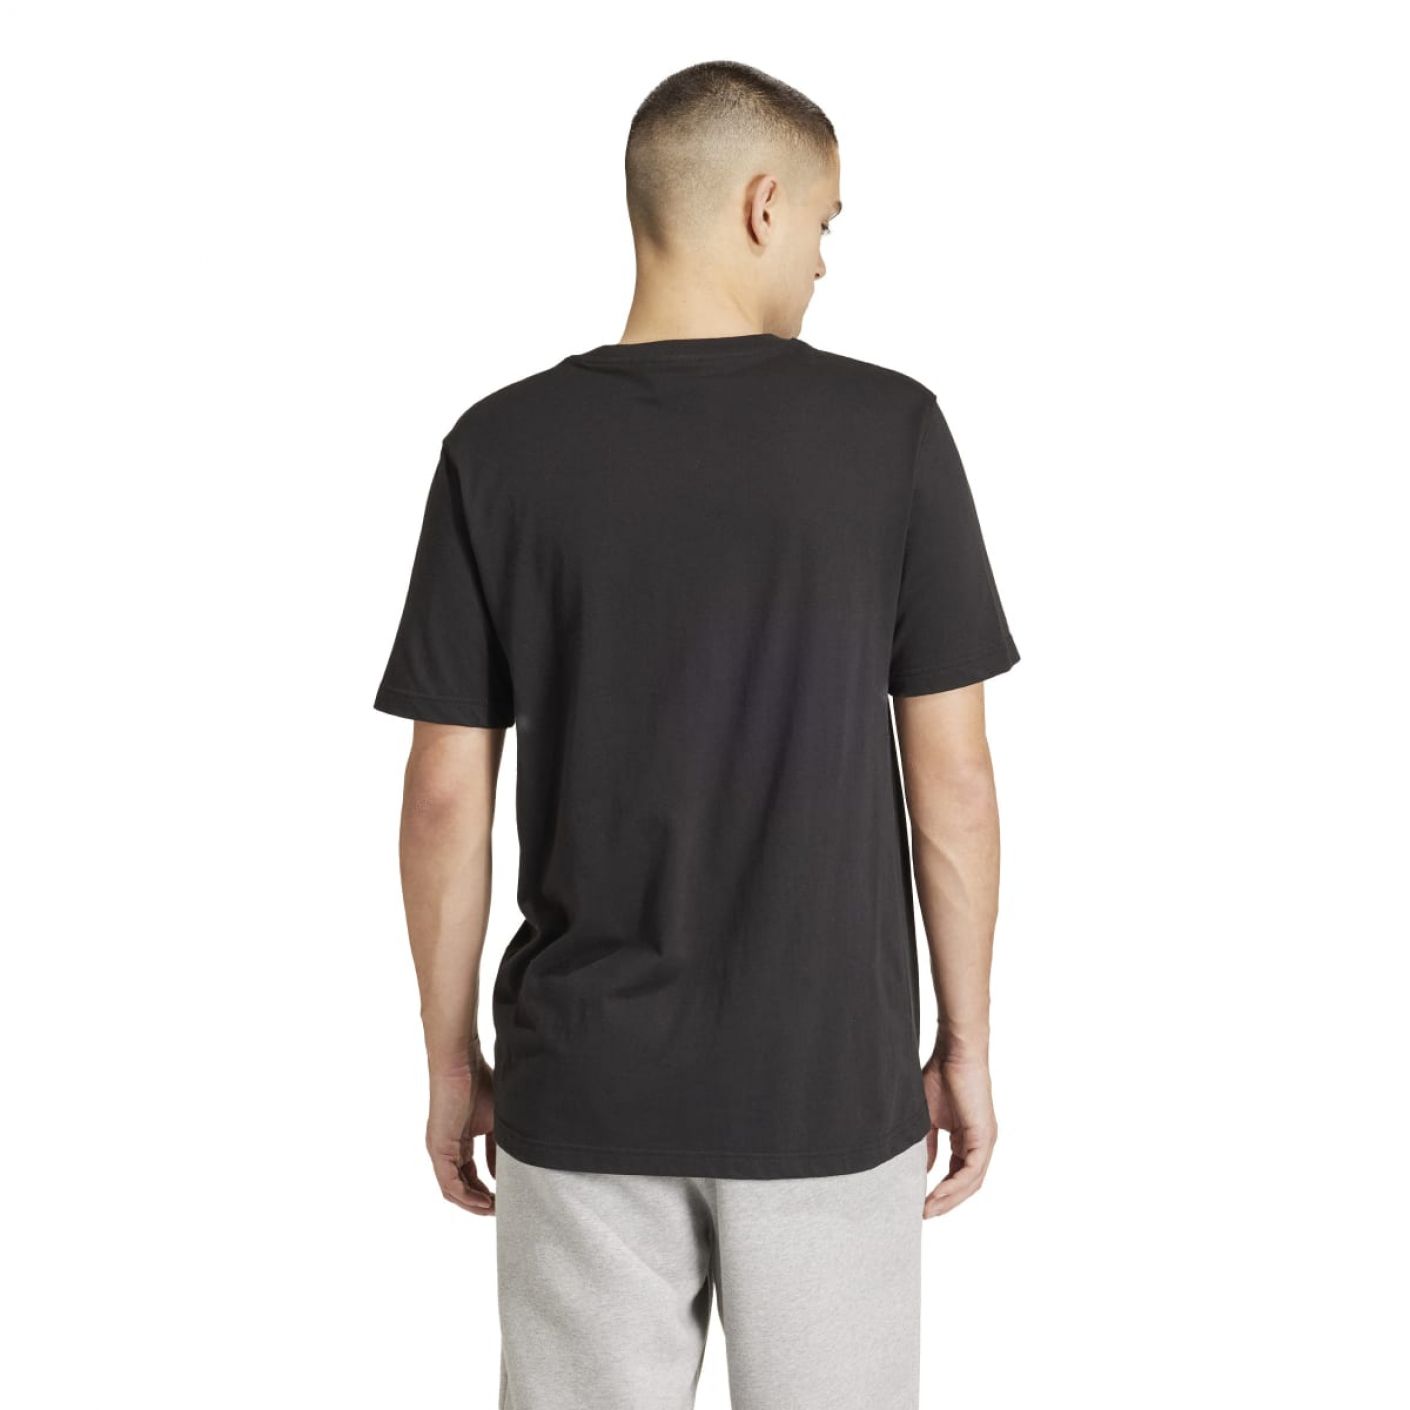 Adidas T-Shirt Trefoil Essential Nera da Uomo